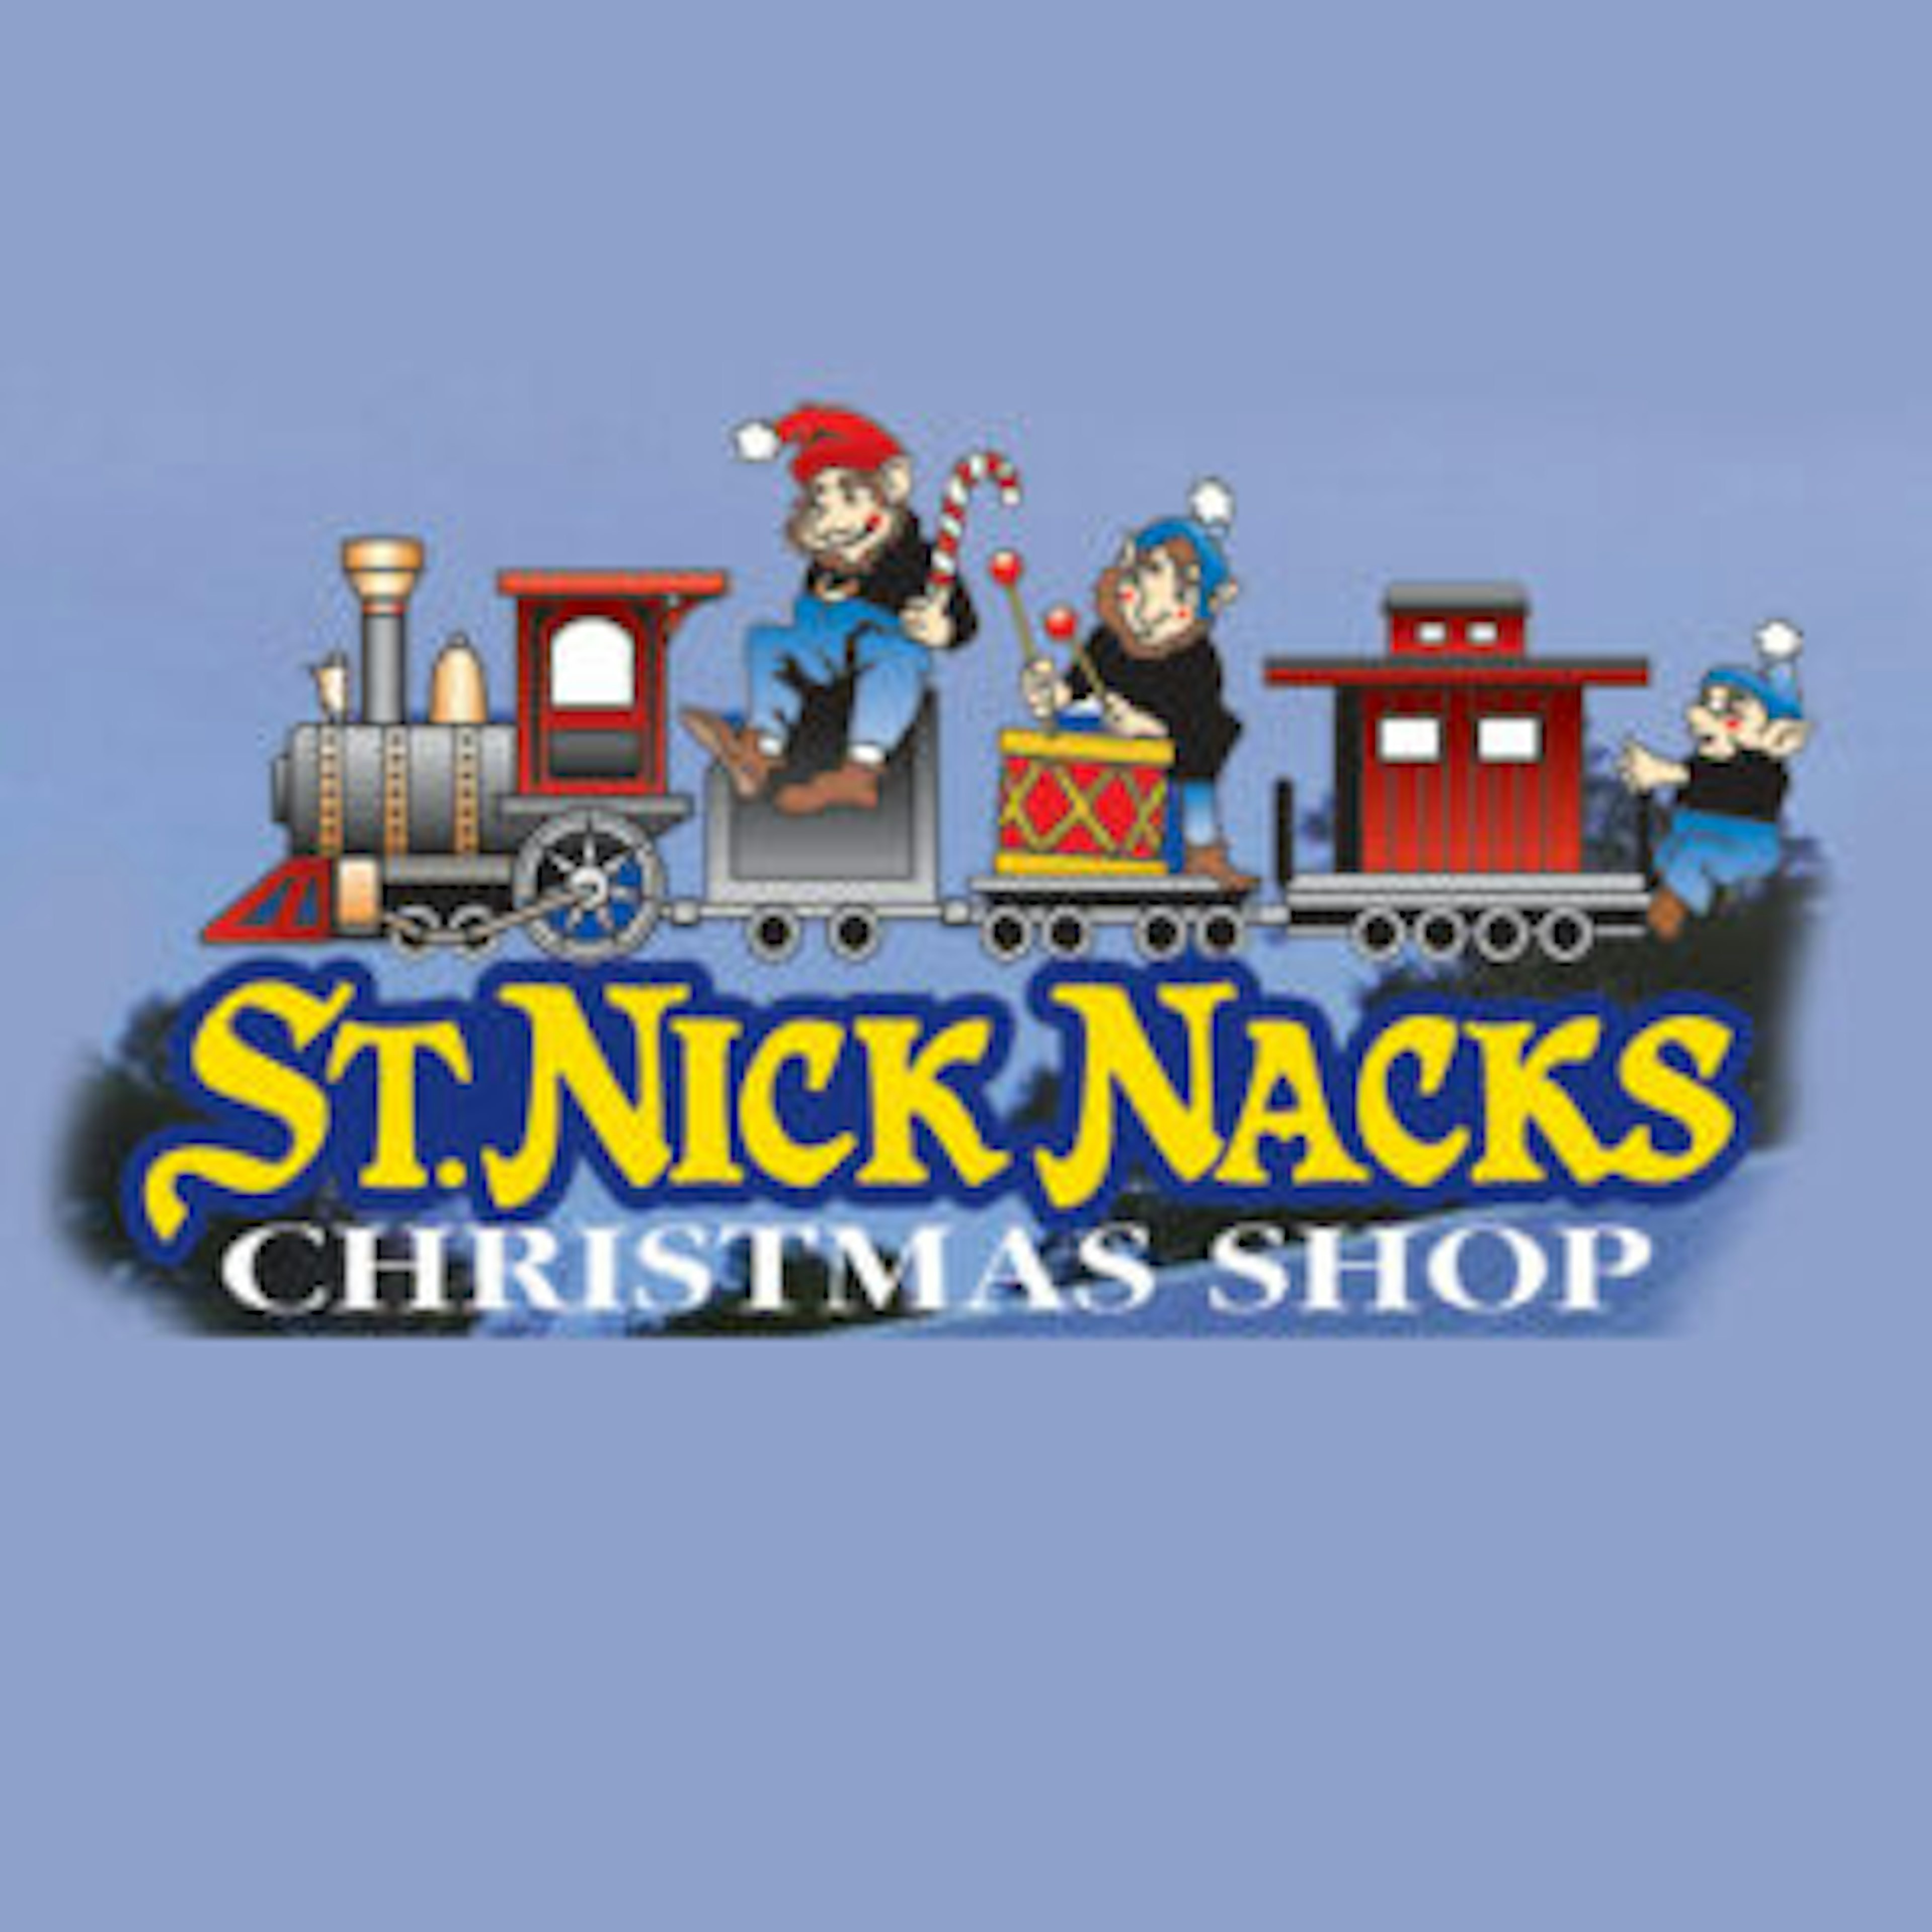 St. Nick Nacks Christmas Shop